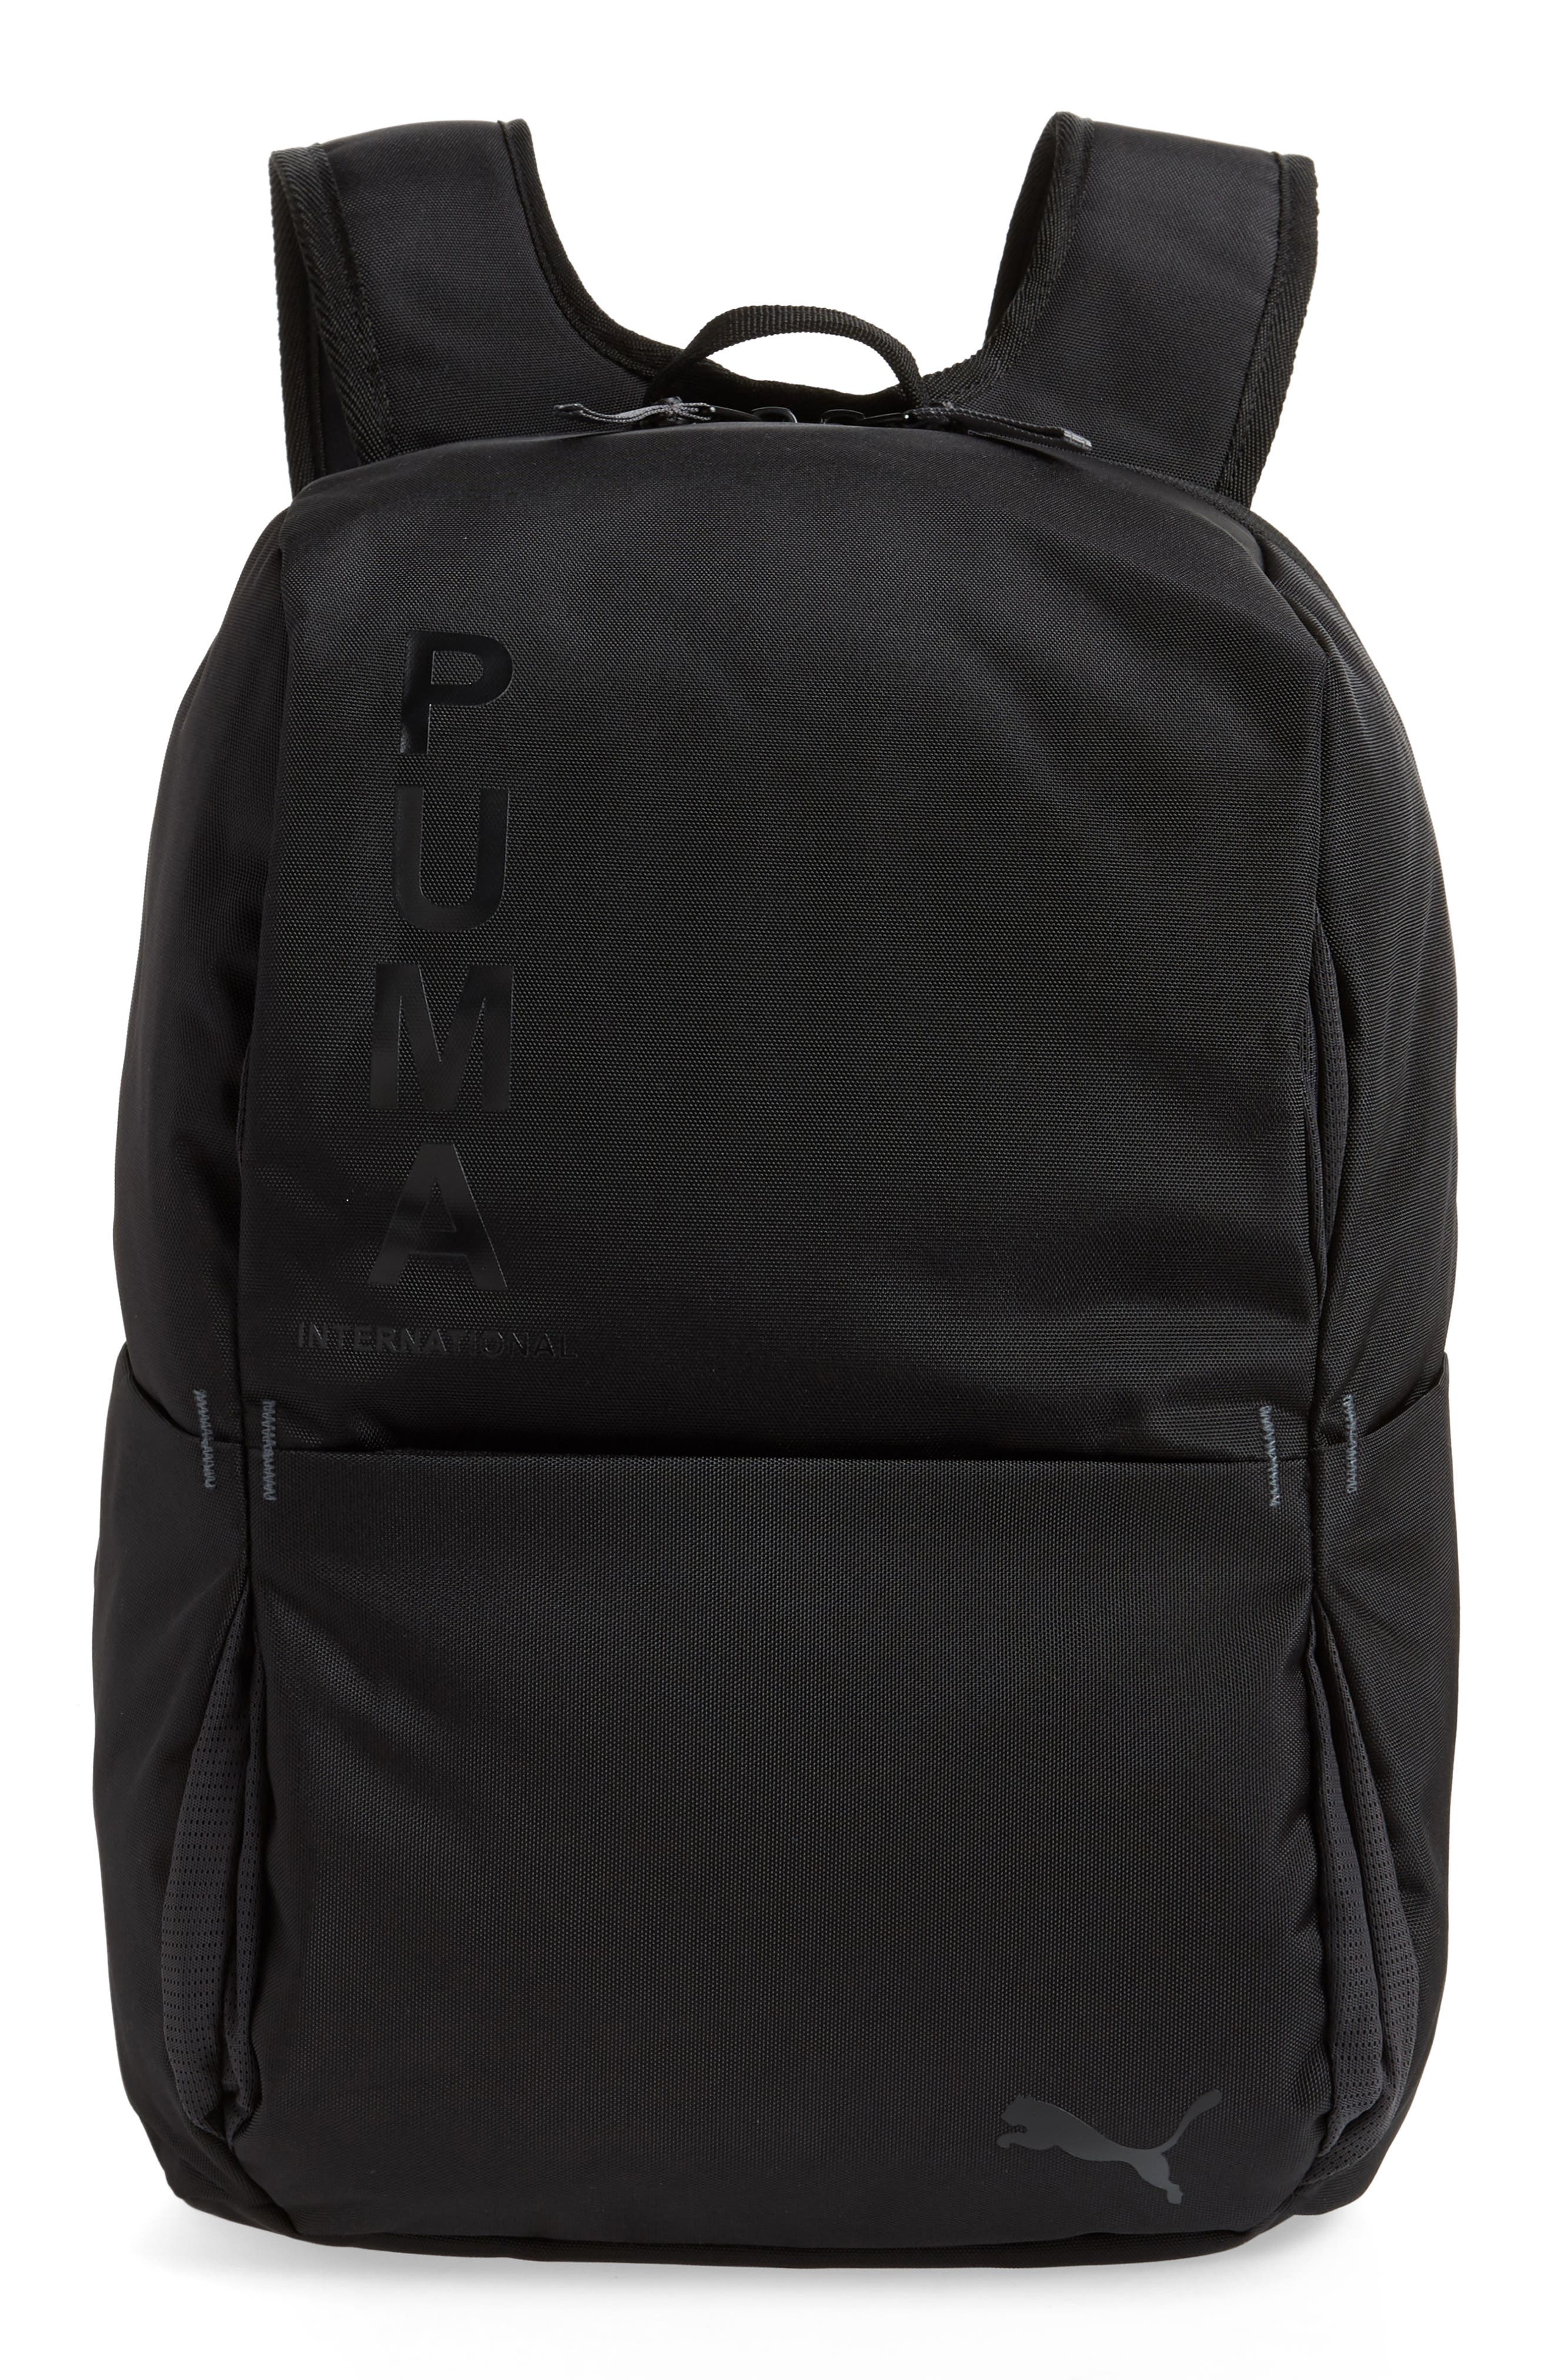 puma ace backpack